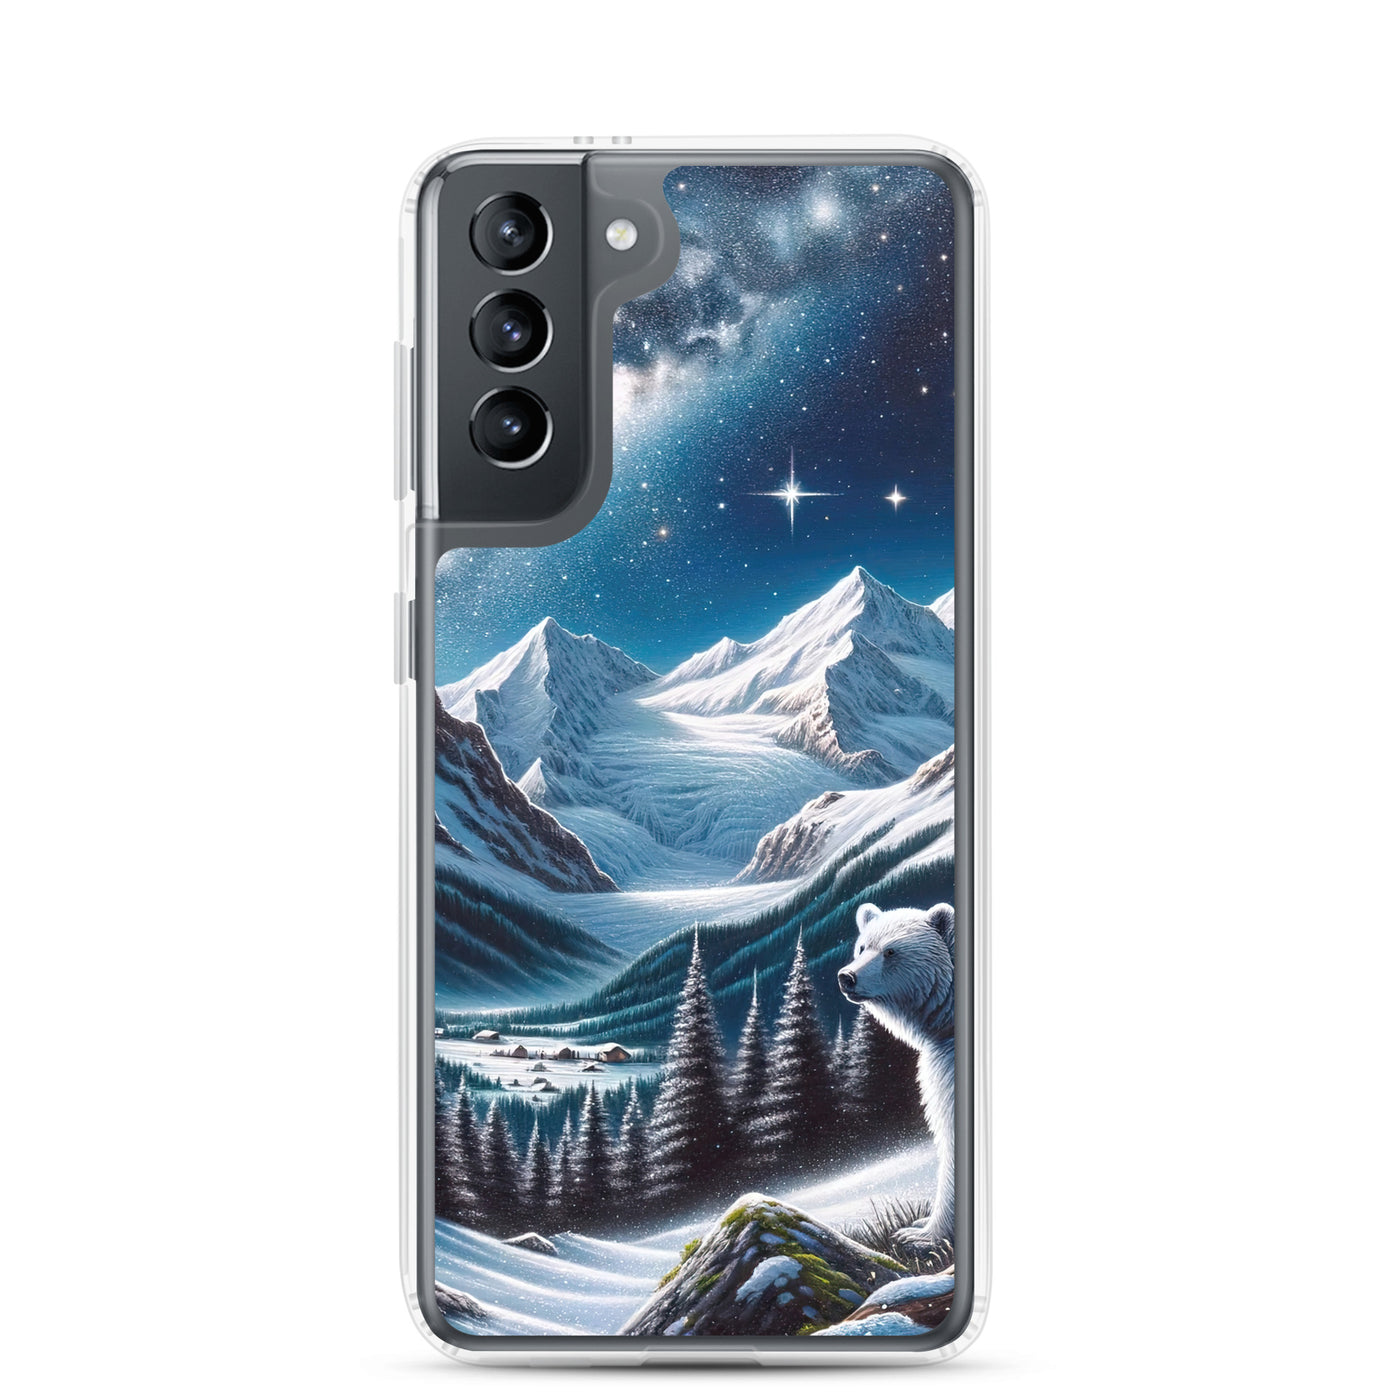 Sternennacht und Eisbär: Acrylgemälde mit Milchstraße, Alpen und schneebedeckte Gipfel - Samsung Schutzhülle (durchsichtig) camping xxx yyy zzz Samsung Galaxy S21